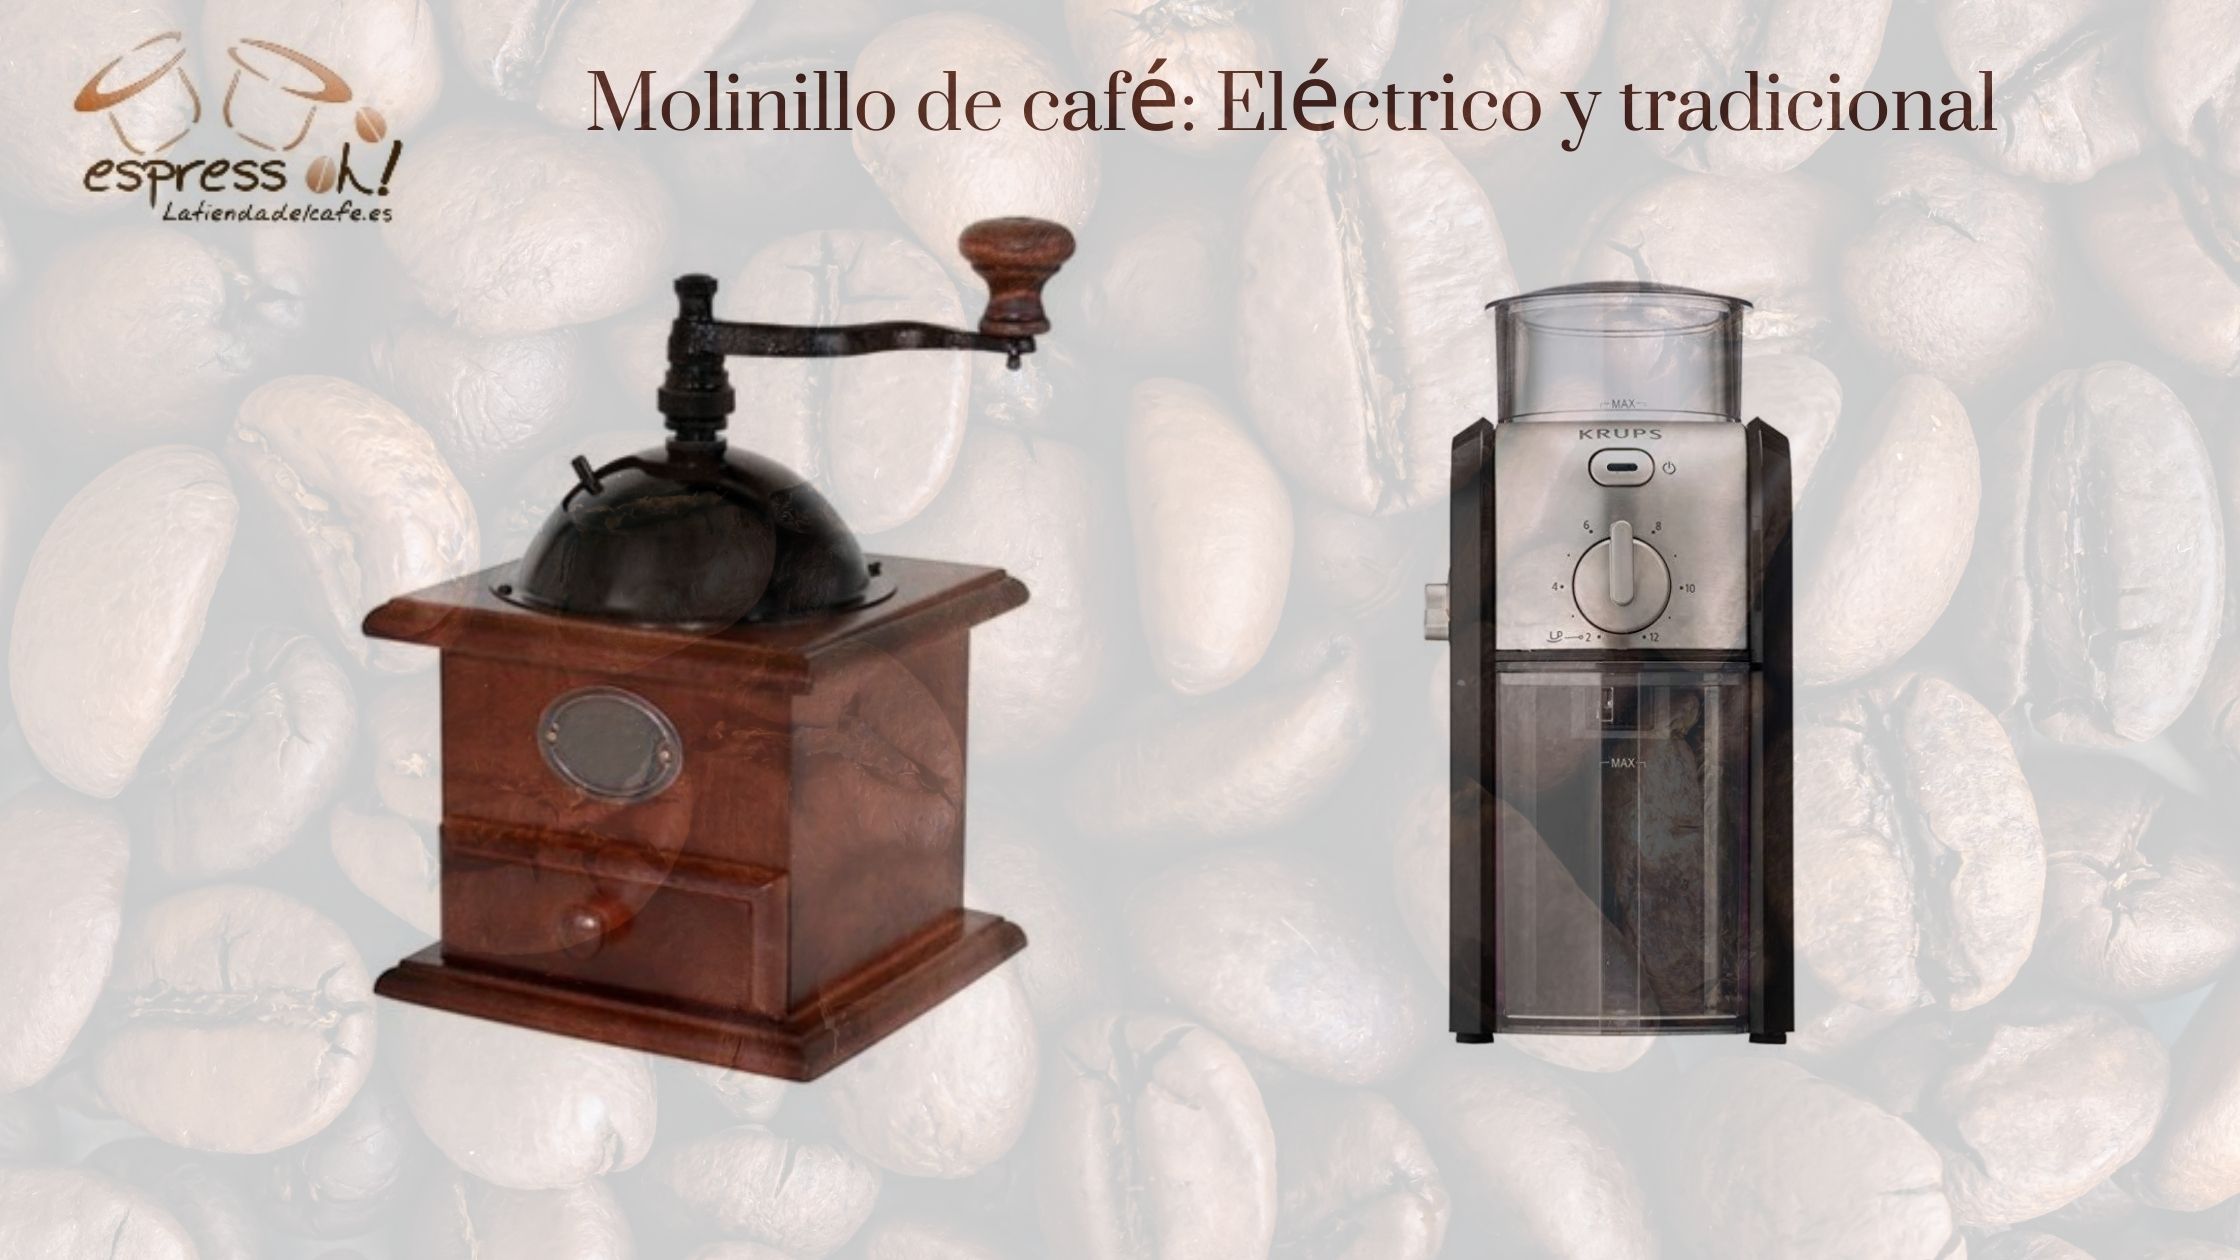 Molinillo de café: Eléctrico y tradicional